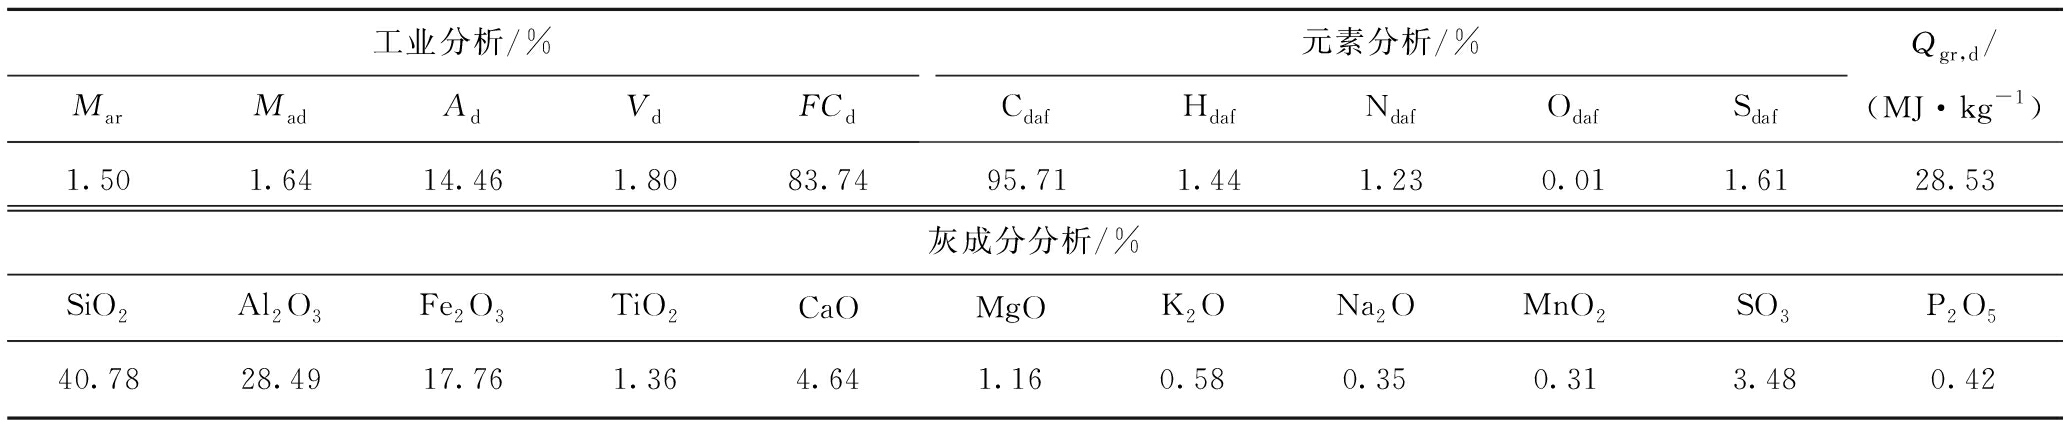 碱和碱土金属对气化焦气化反应性的影响